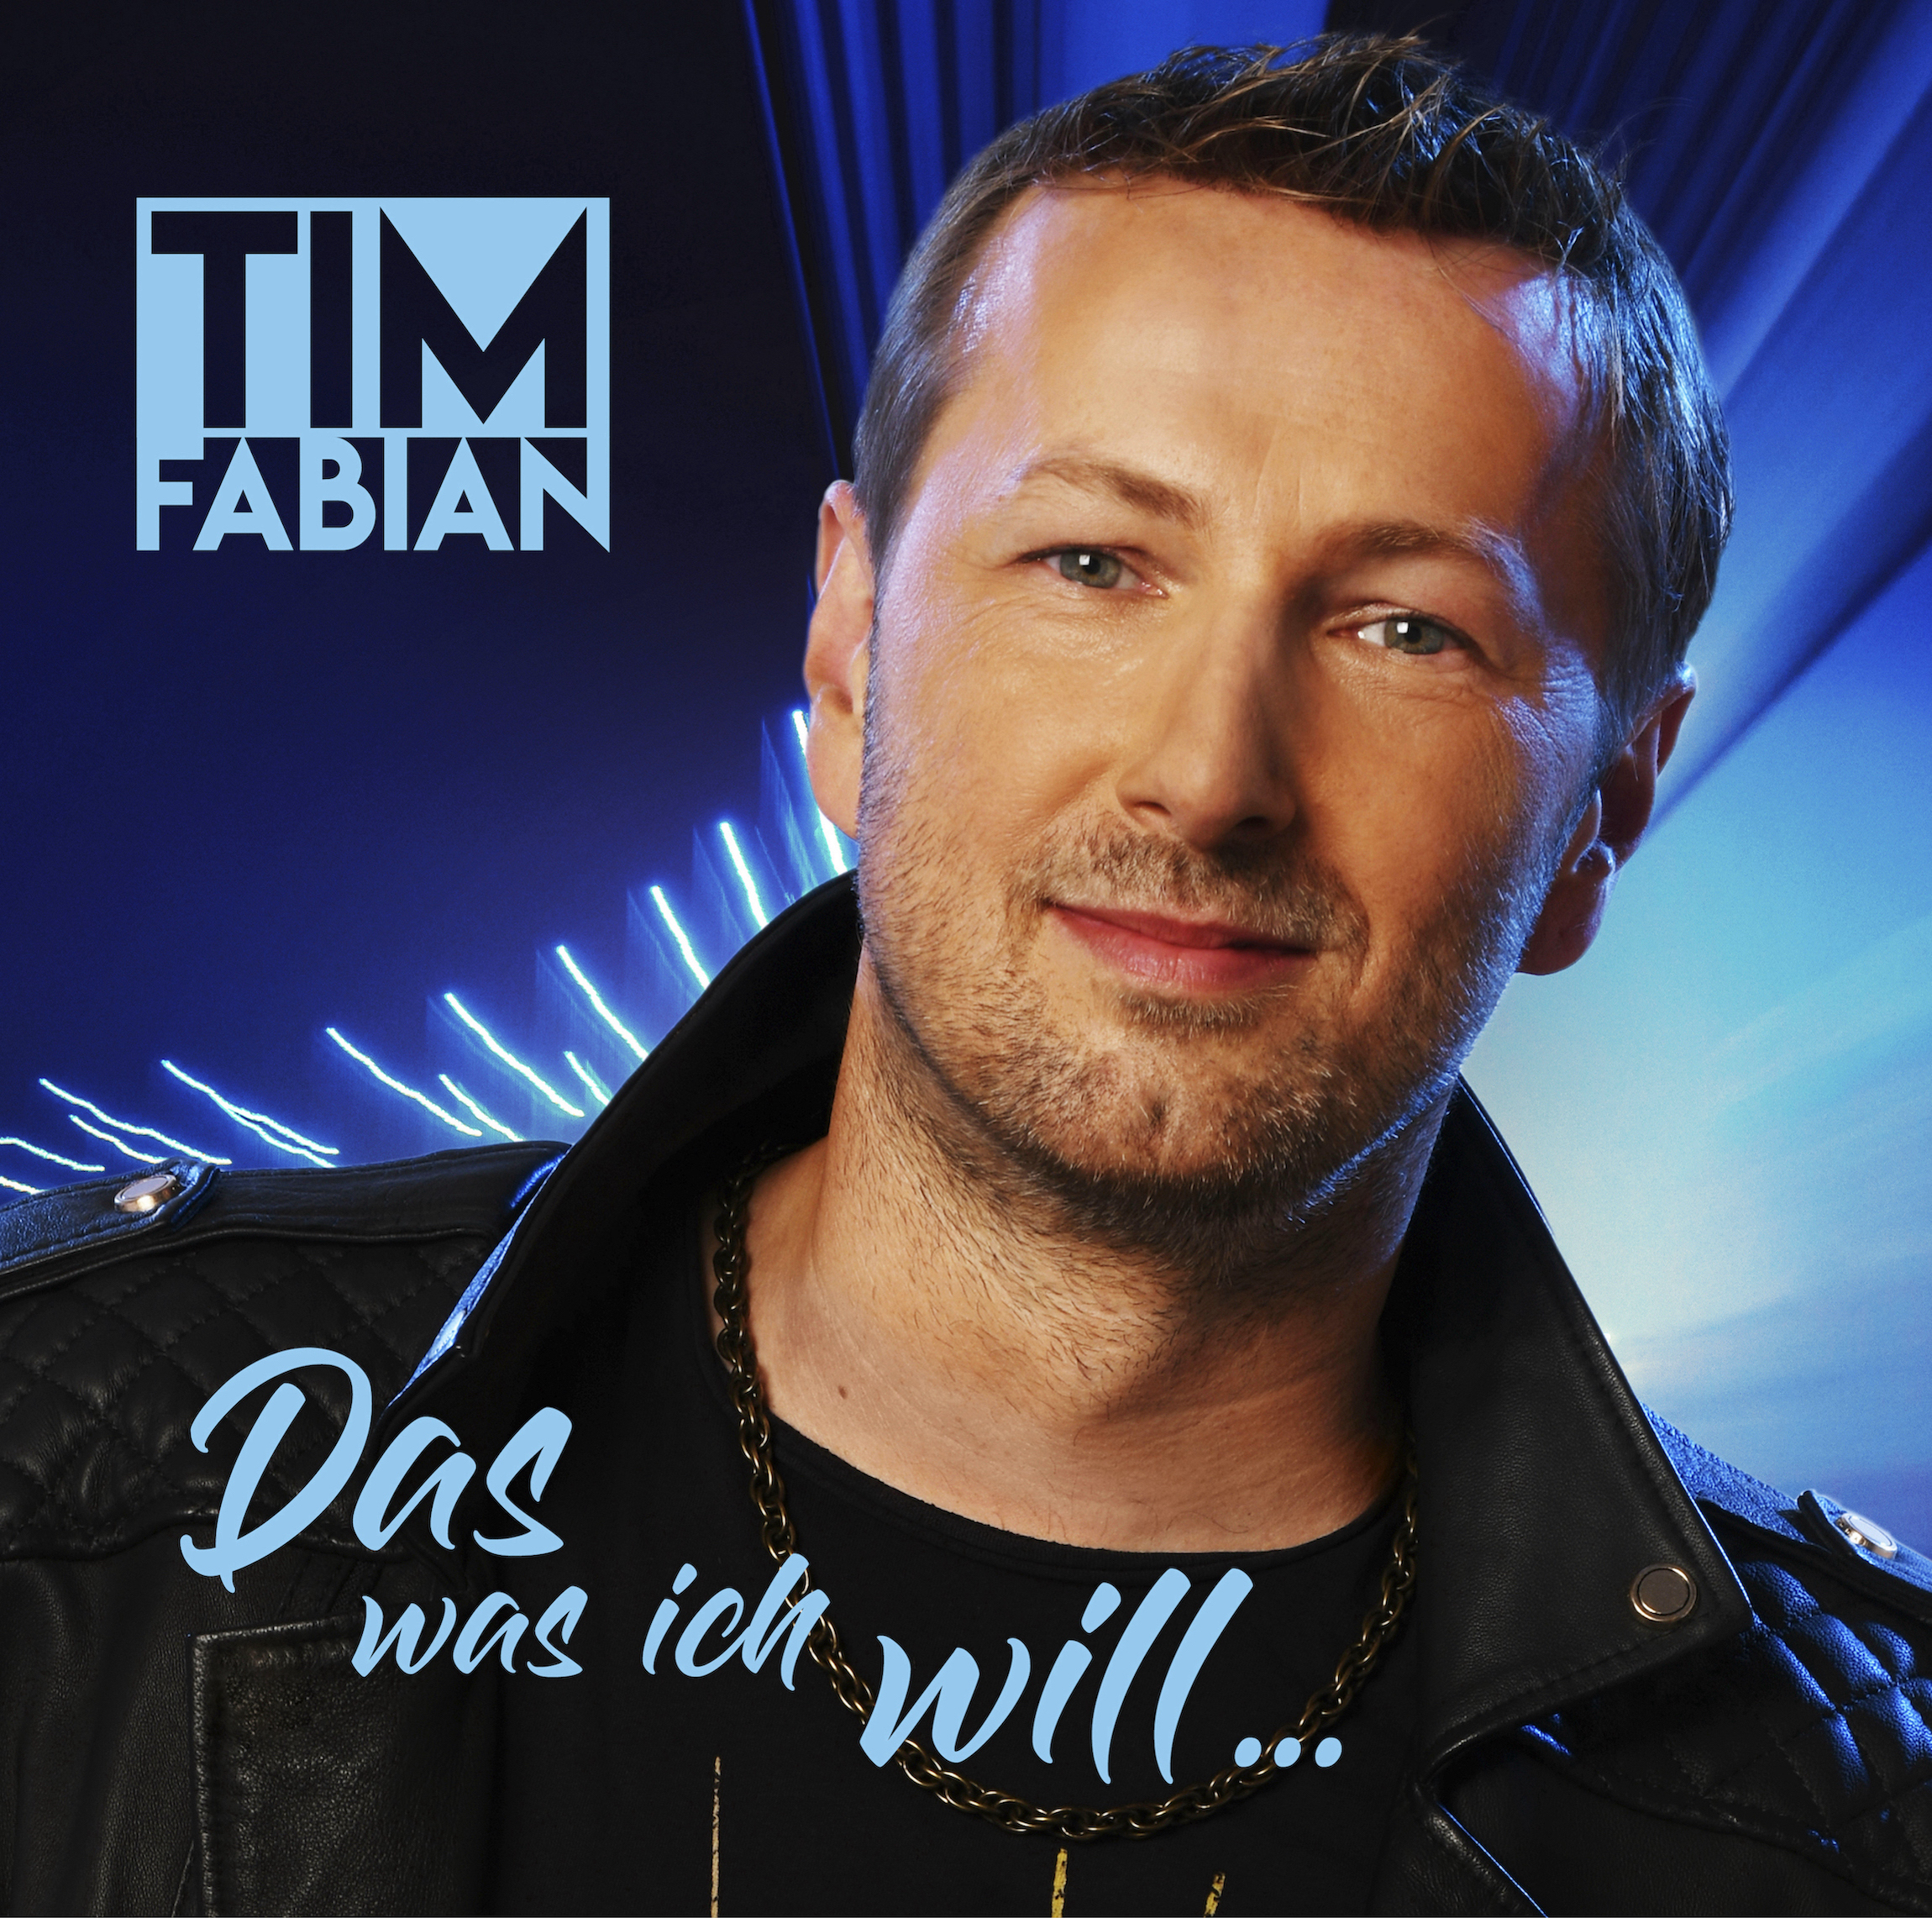 TIM FABIAN * Das was ich will ... (Download-Track)